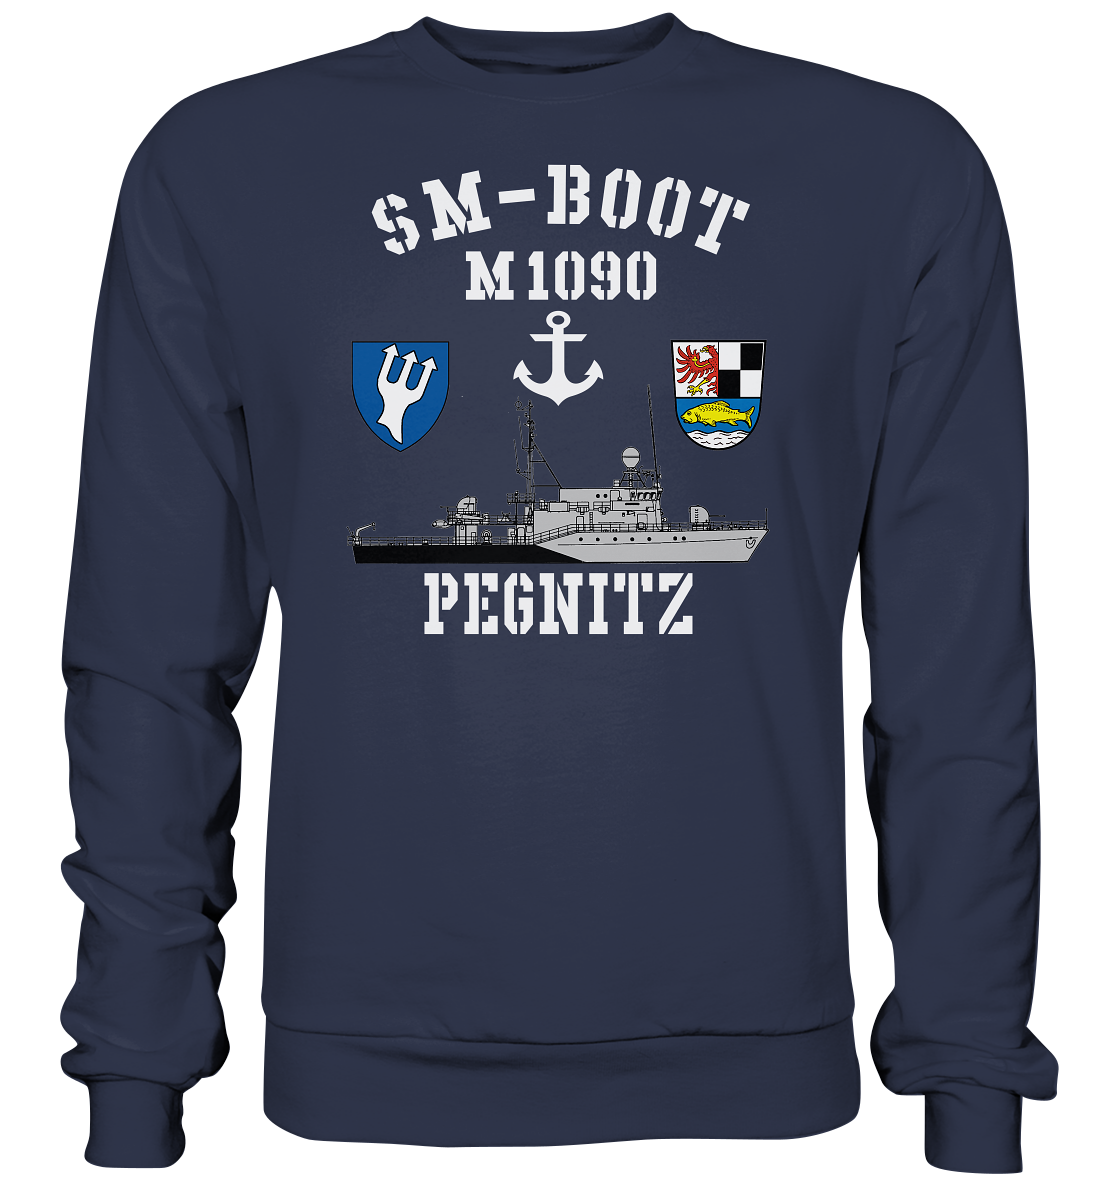 SM-Boot M1090 PEGNITZ - Premium Sweatshirt